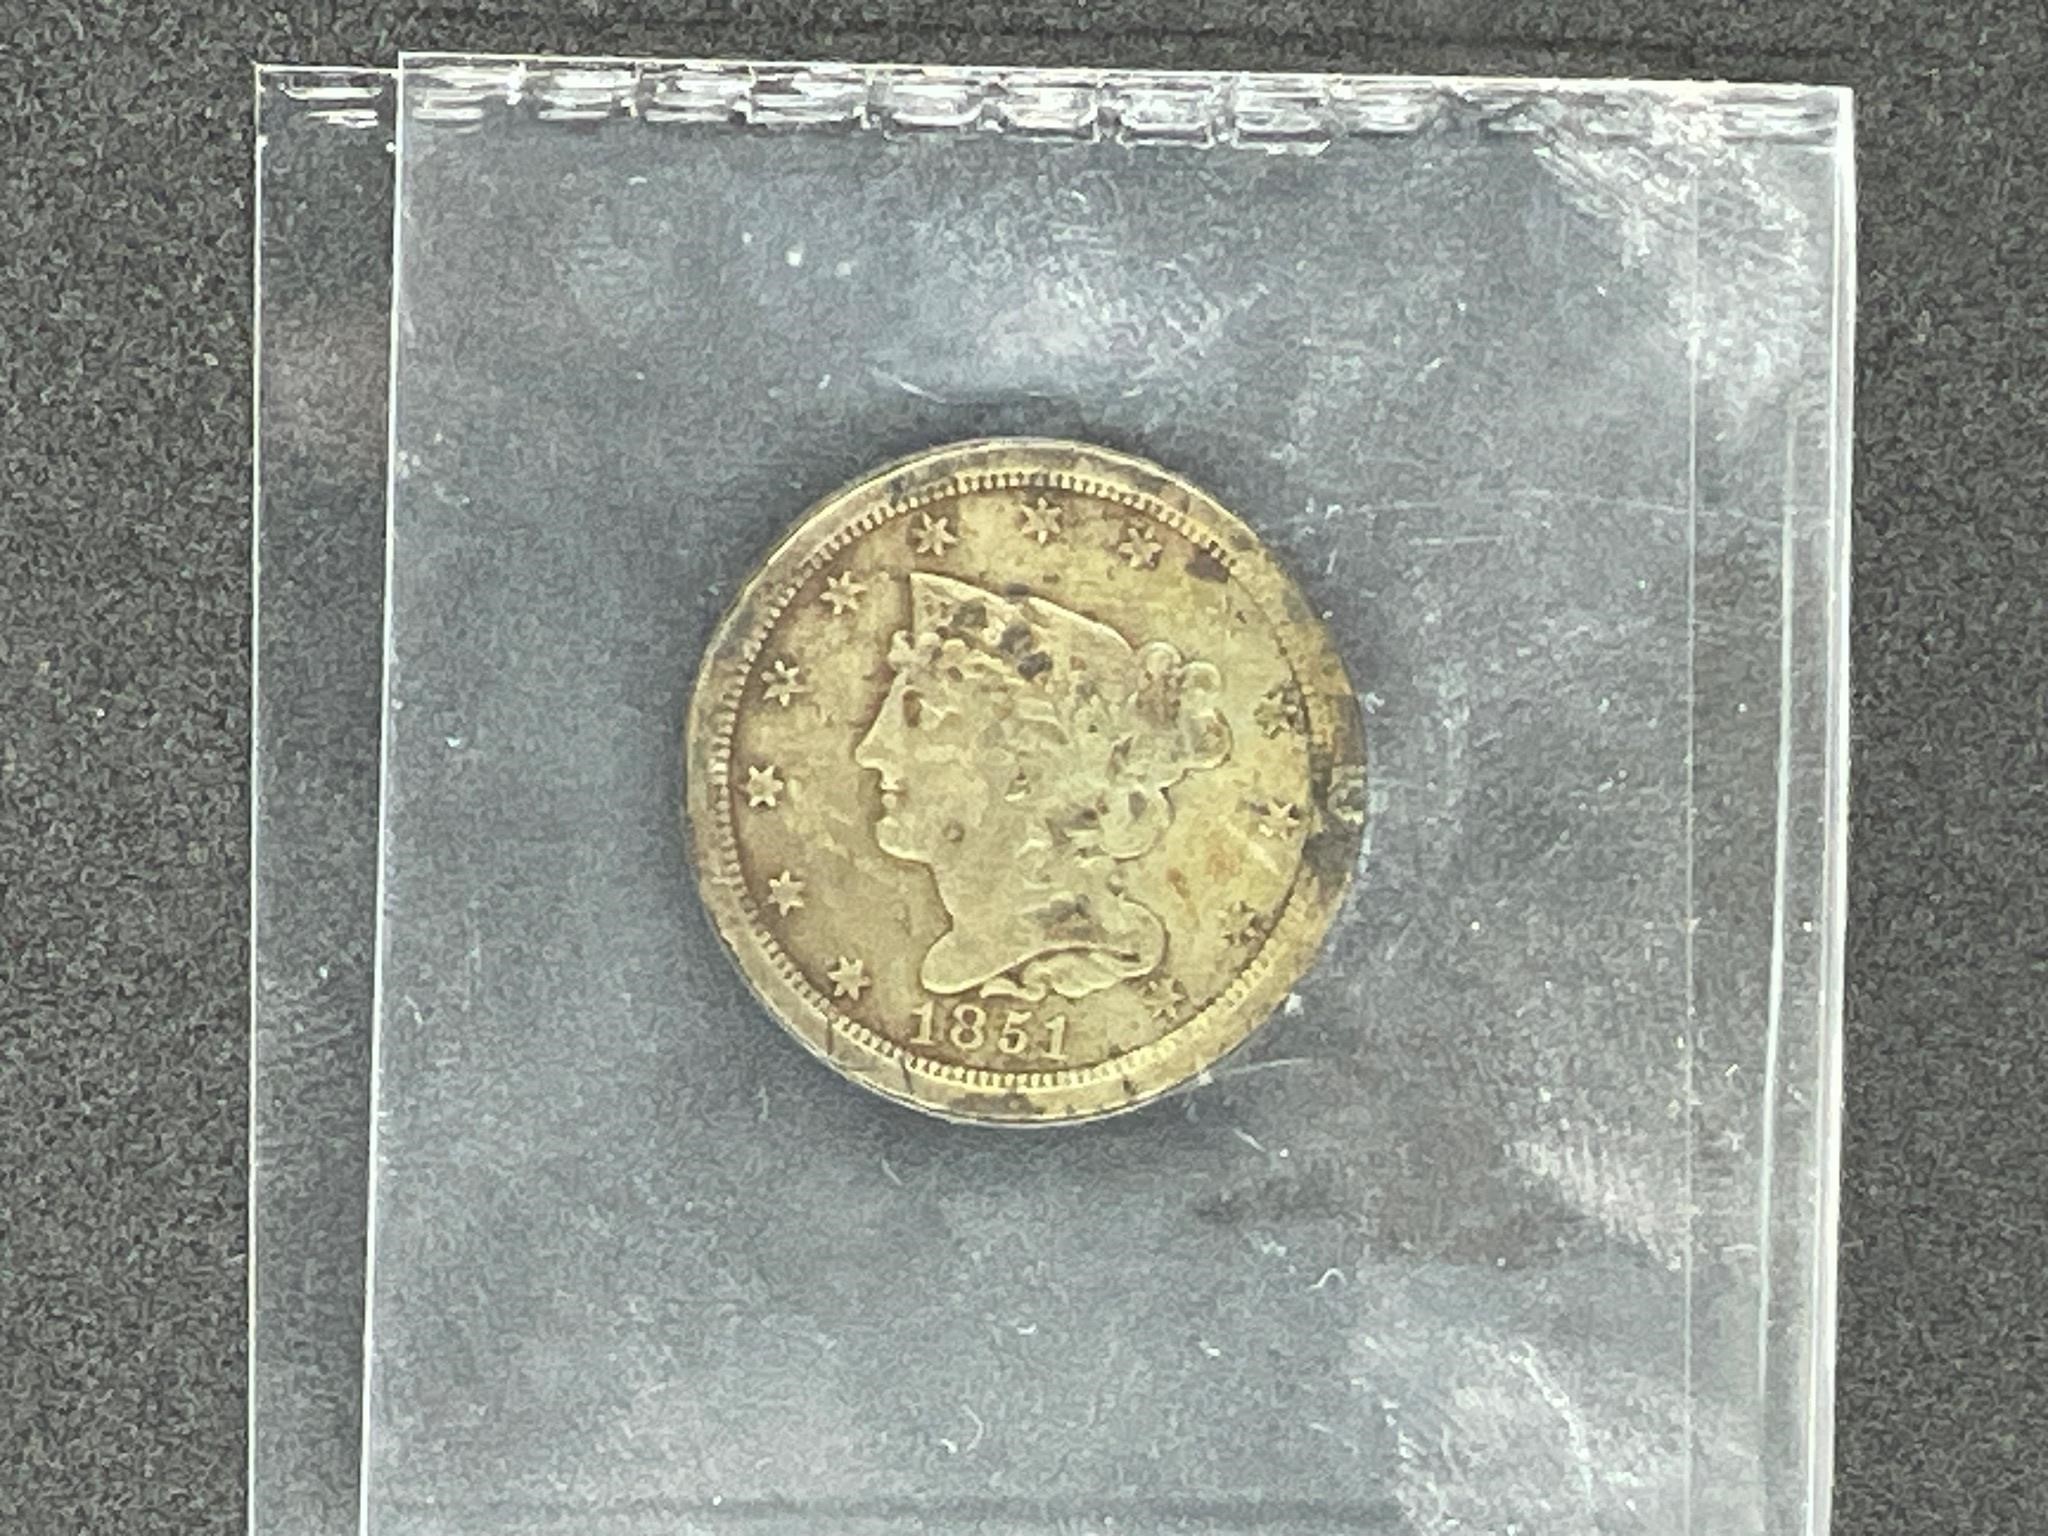 1851 half cent coin